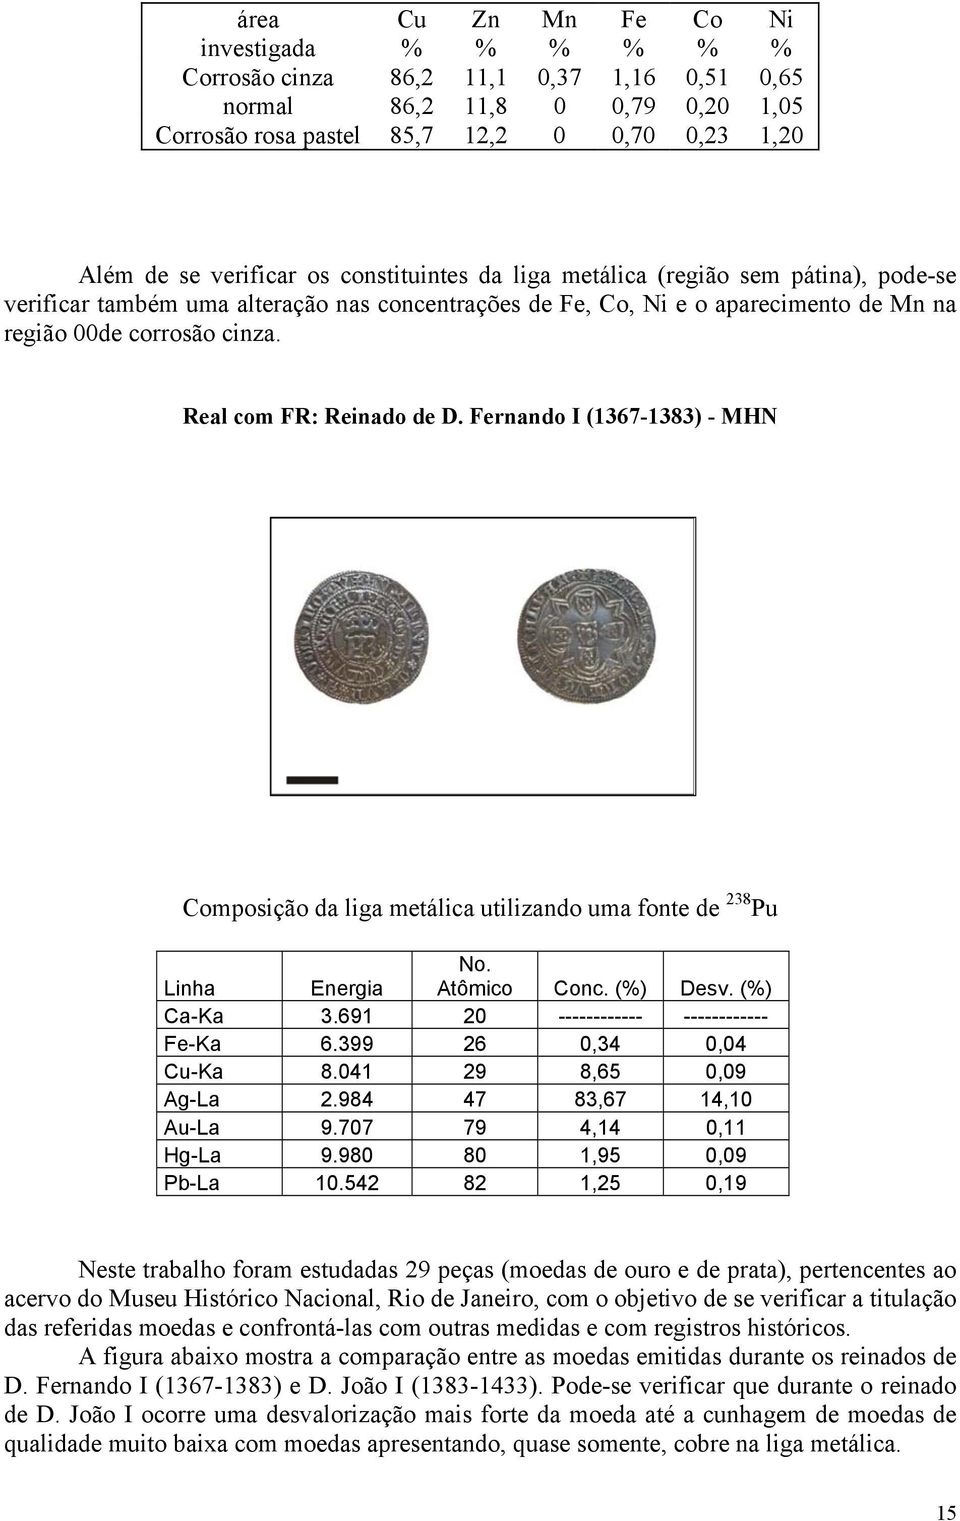 Real com FR: Reinado de D. Fernando I (1367-1383) - MHN Composição da liga metálica utilizando uma fonte de 238 Pu Linha Energia No. Atômico Conc. (%) Desv. (%) Ca-Ka 3.